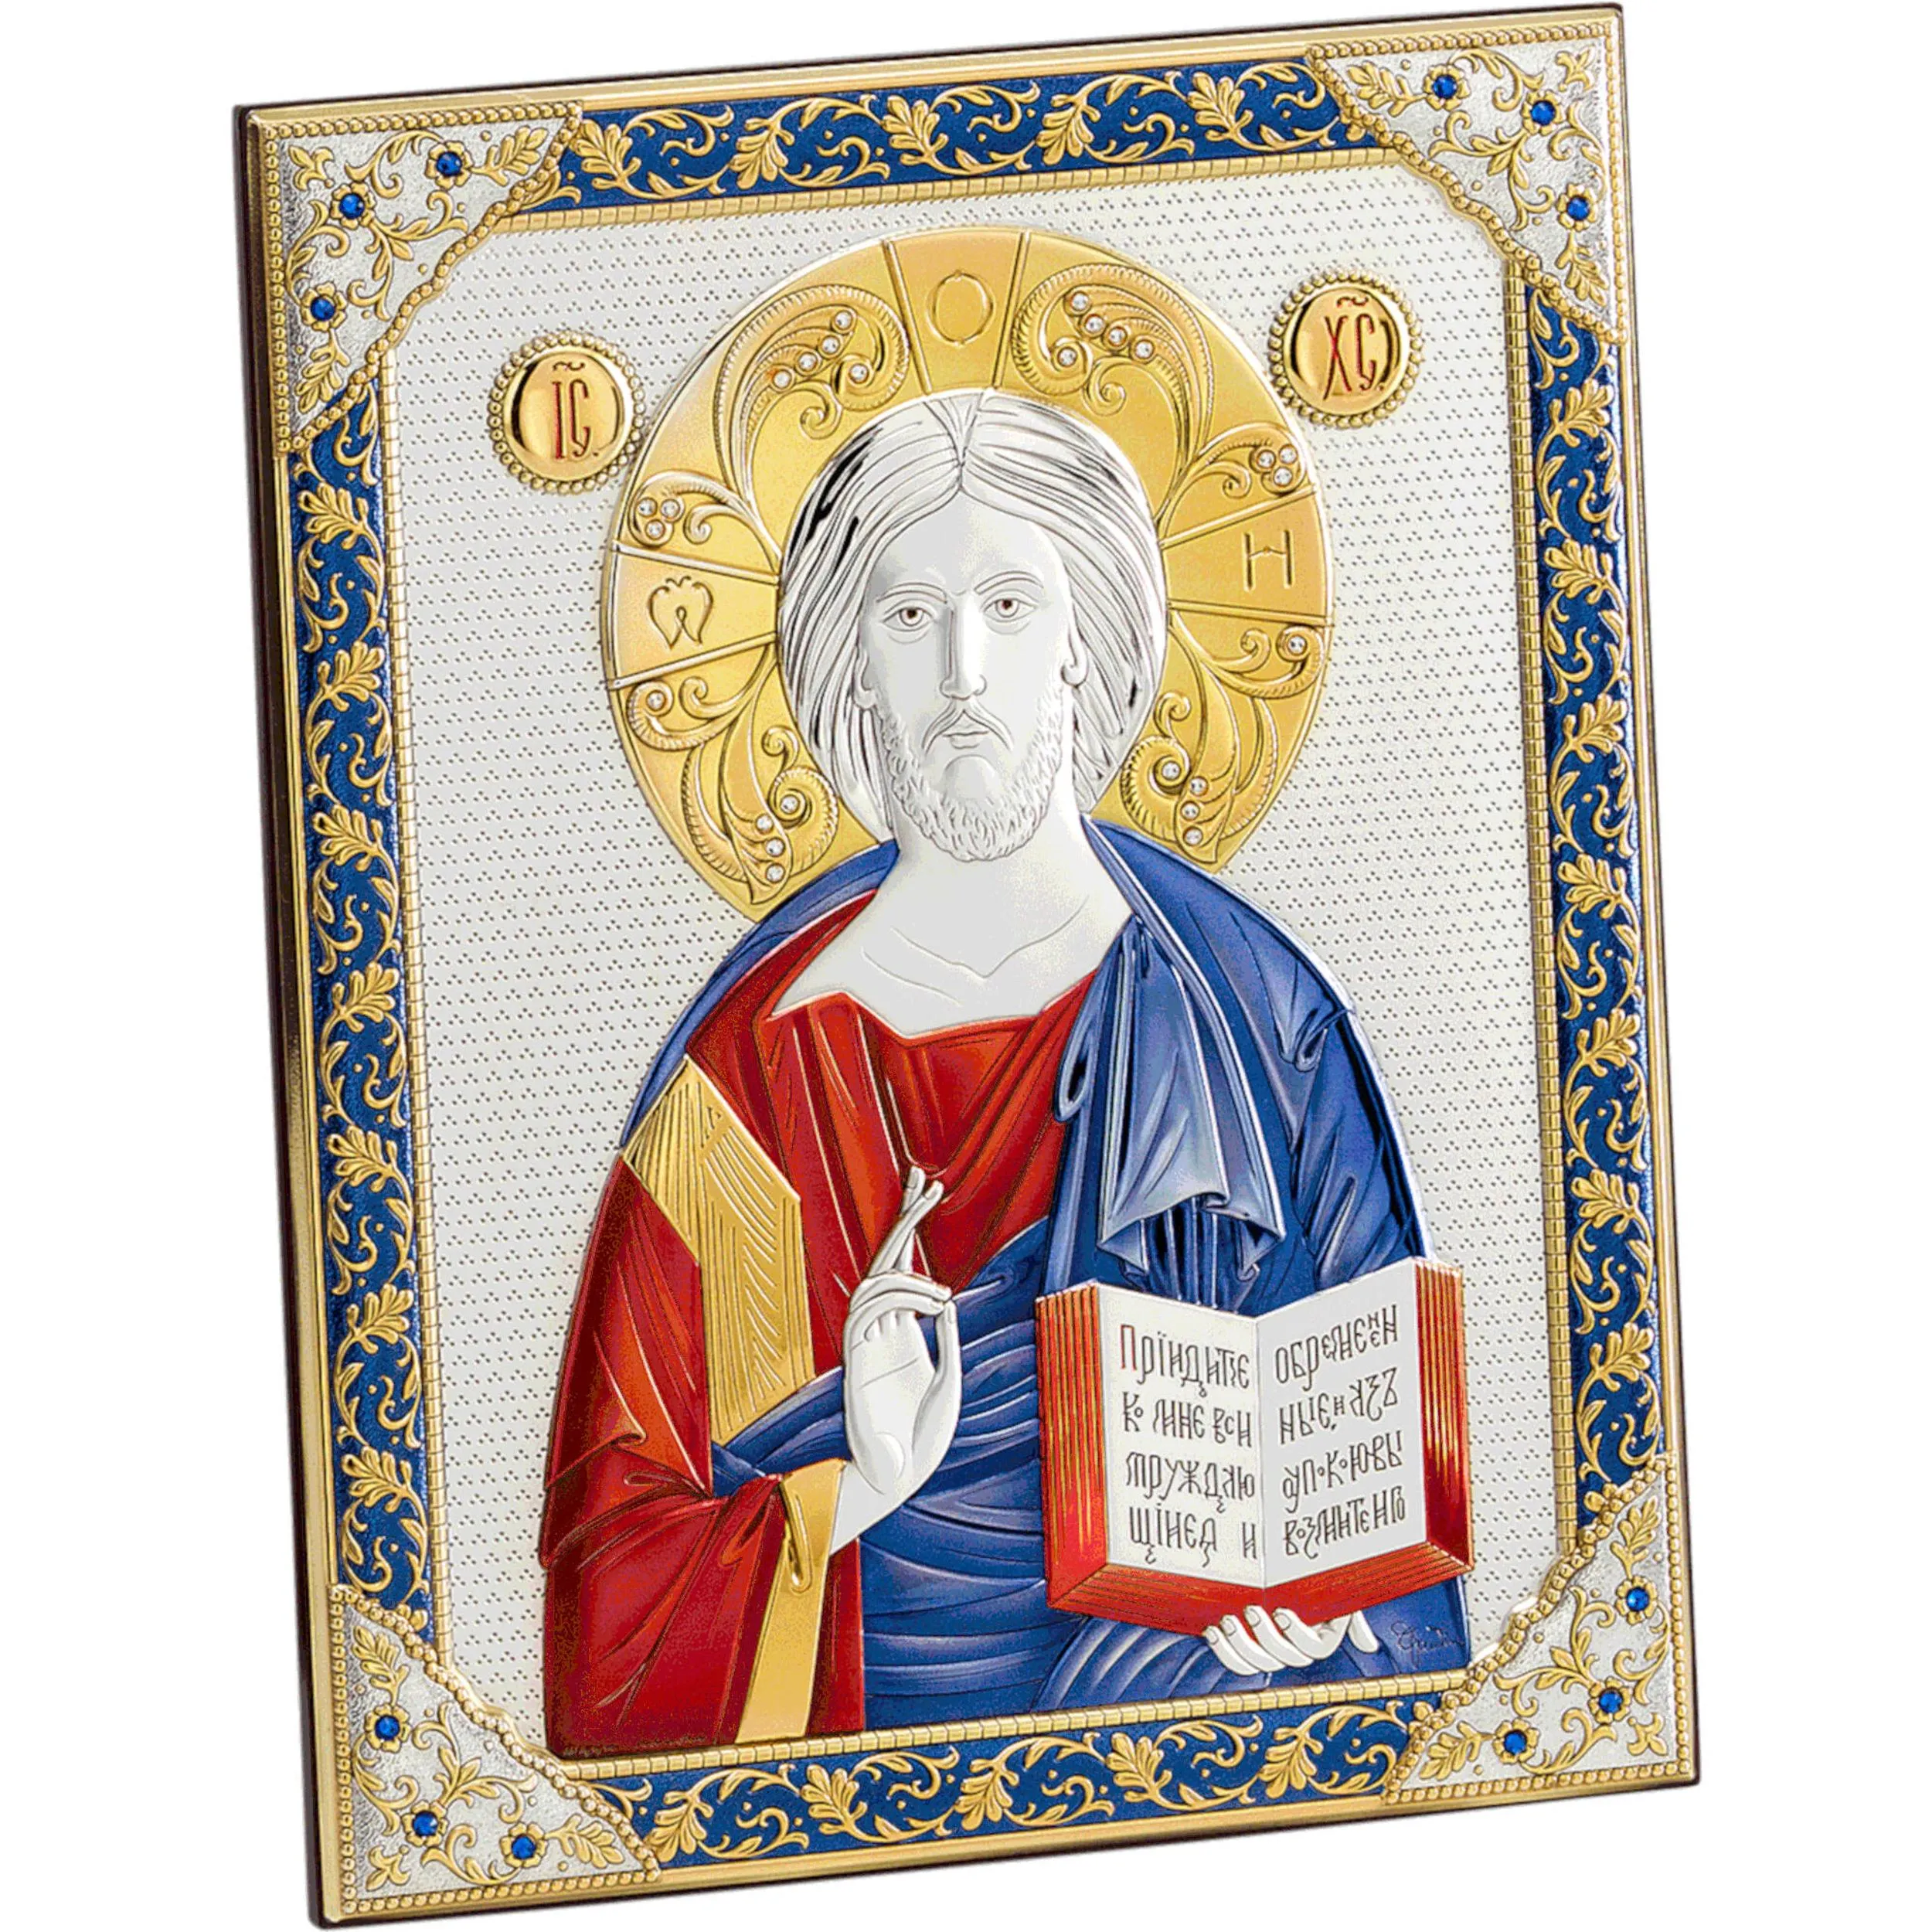 Cristo, base in legno ed immagine incolore 21,2x17 cm, immagine sacra immagine sacra su placca lavorata in bilaminato opaca lavorazione bizantina, può essere appeso o appoggiato